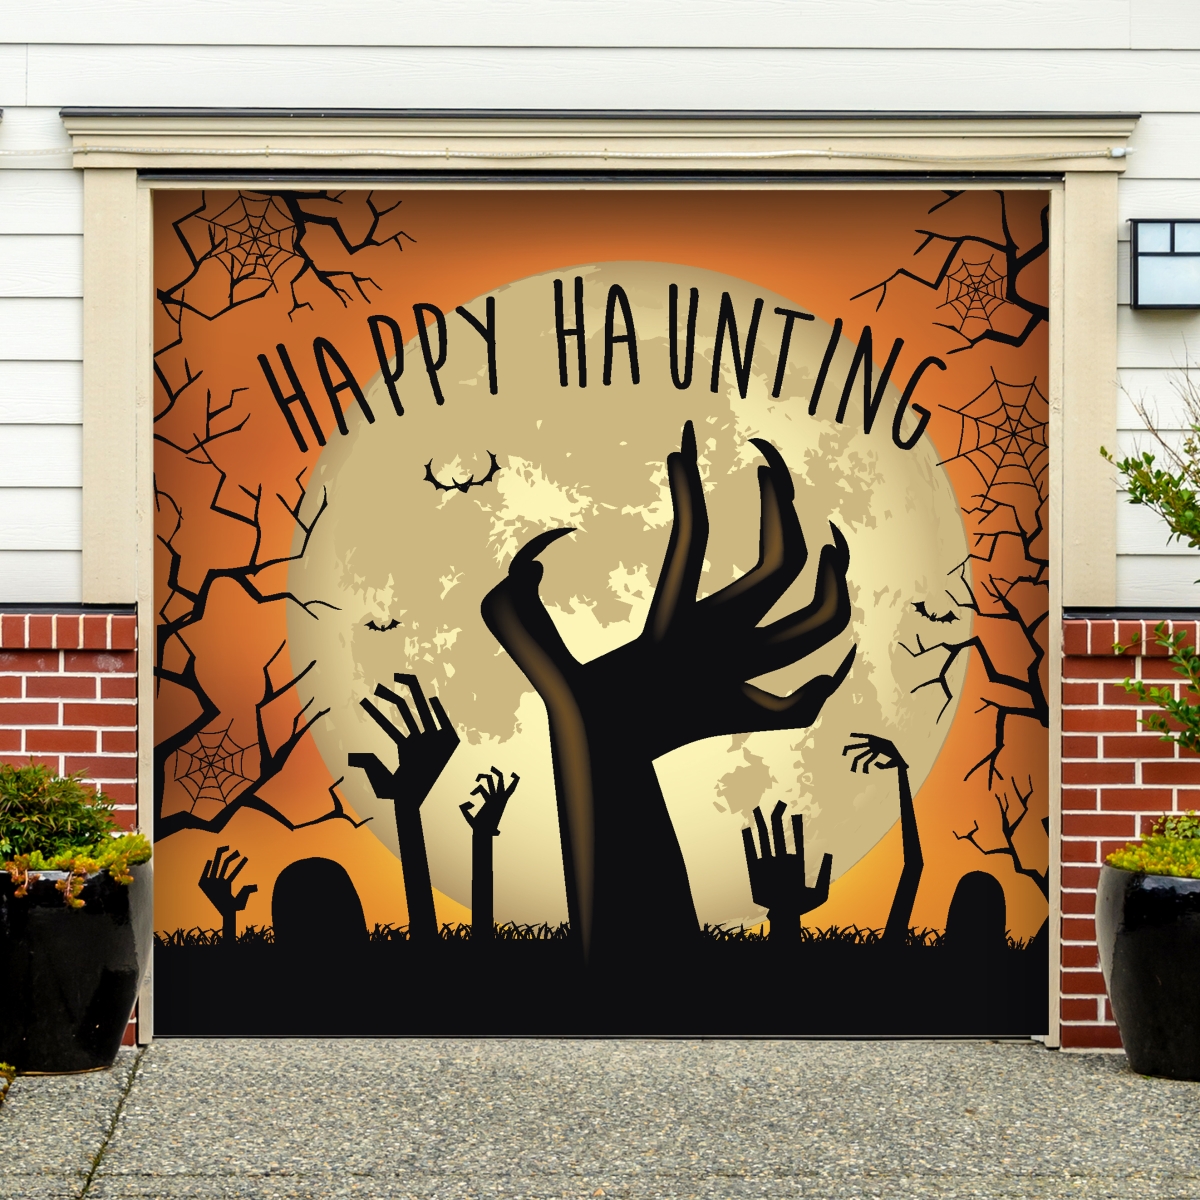 285903hall-007 7 X 8 Ft. Happy Haunting Graveyard Zombie Hands Halloween Door Mural Sign Car Garage Banner Decor, Multi Color